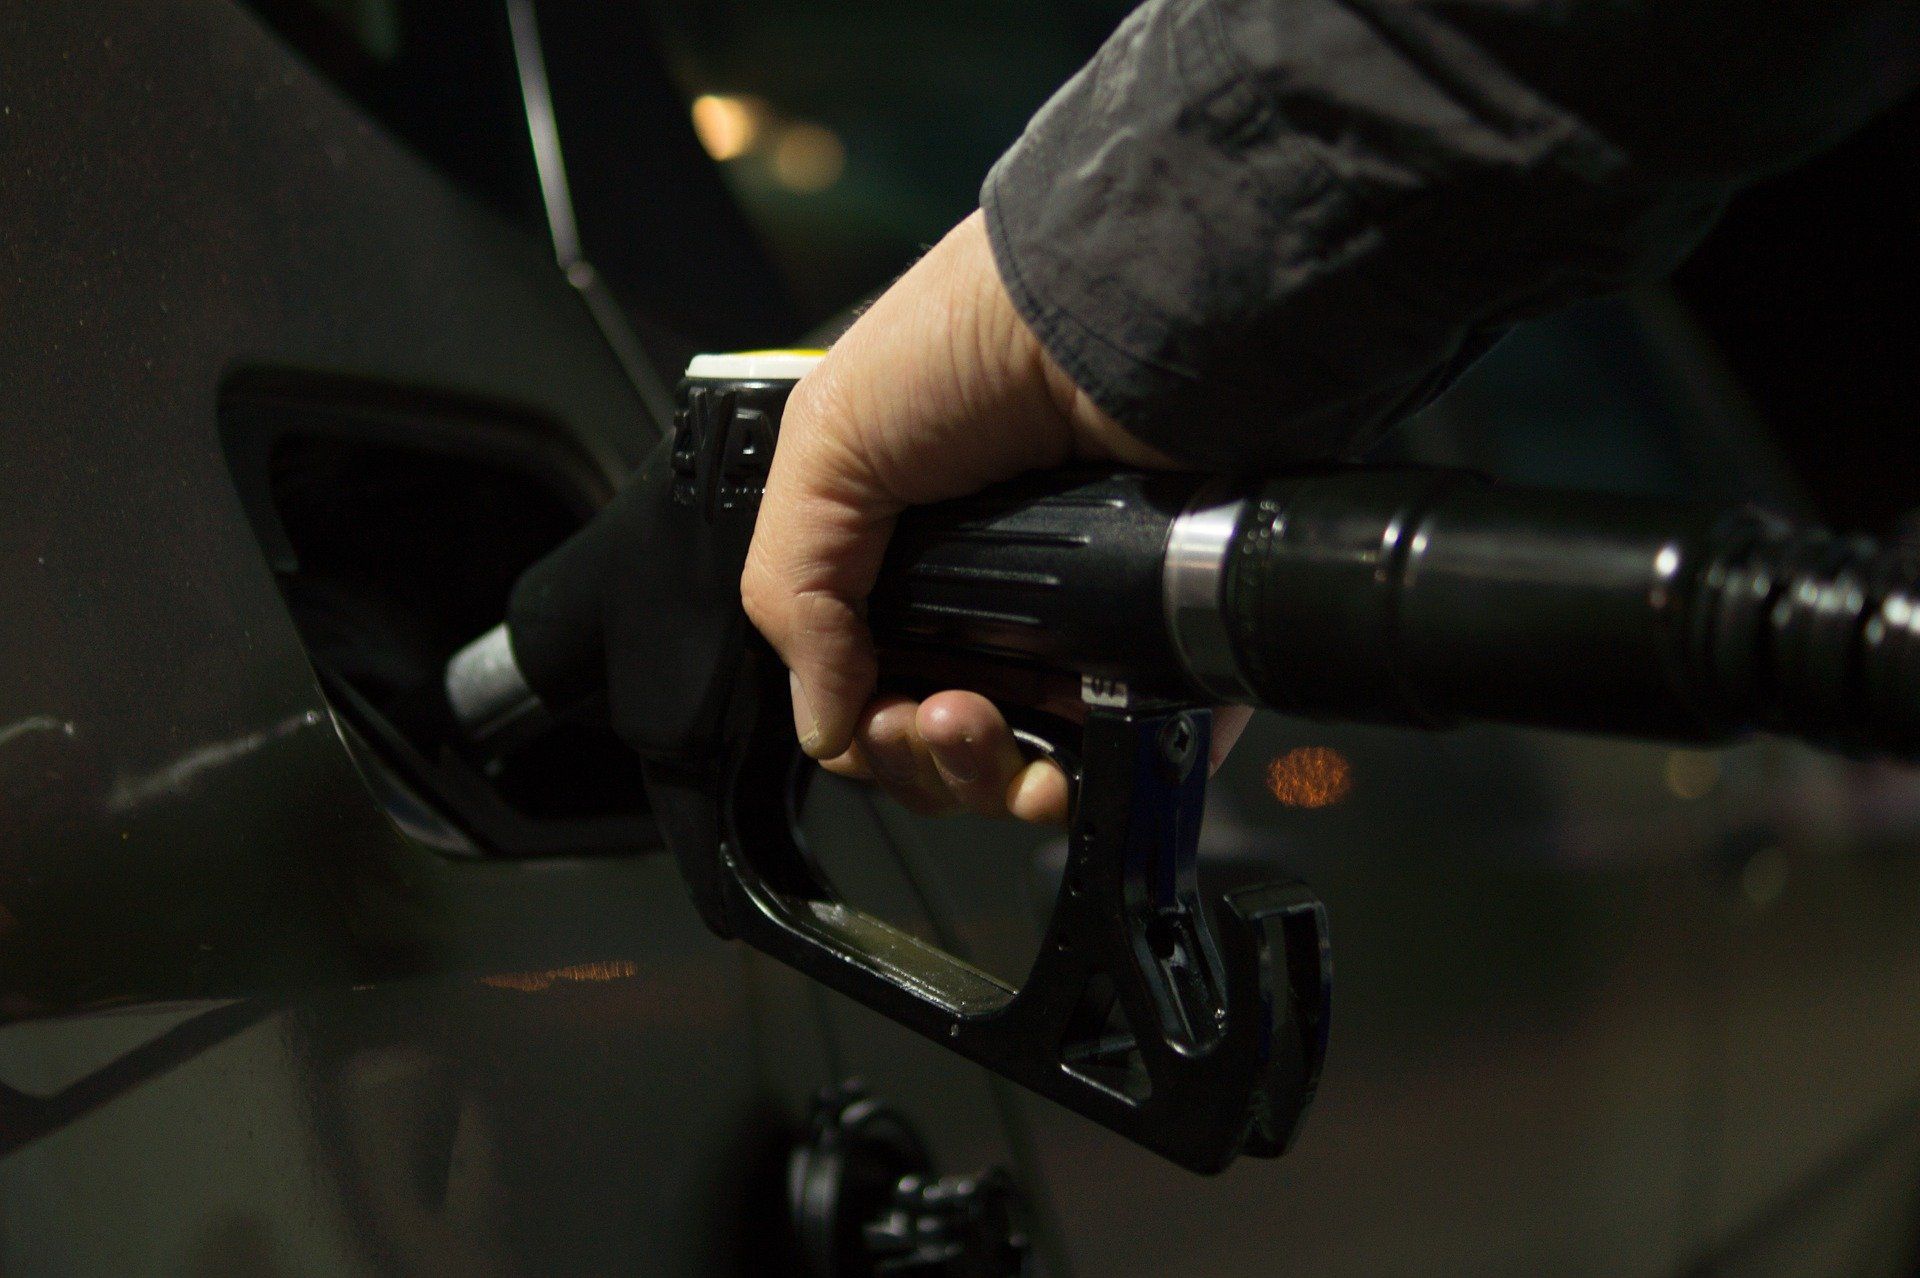 Fuel price June 17, 2022: Petrol Rs 96.72, diesel Rs 89.62 in Delhi